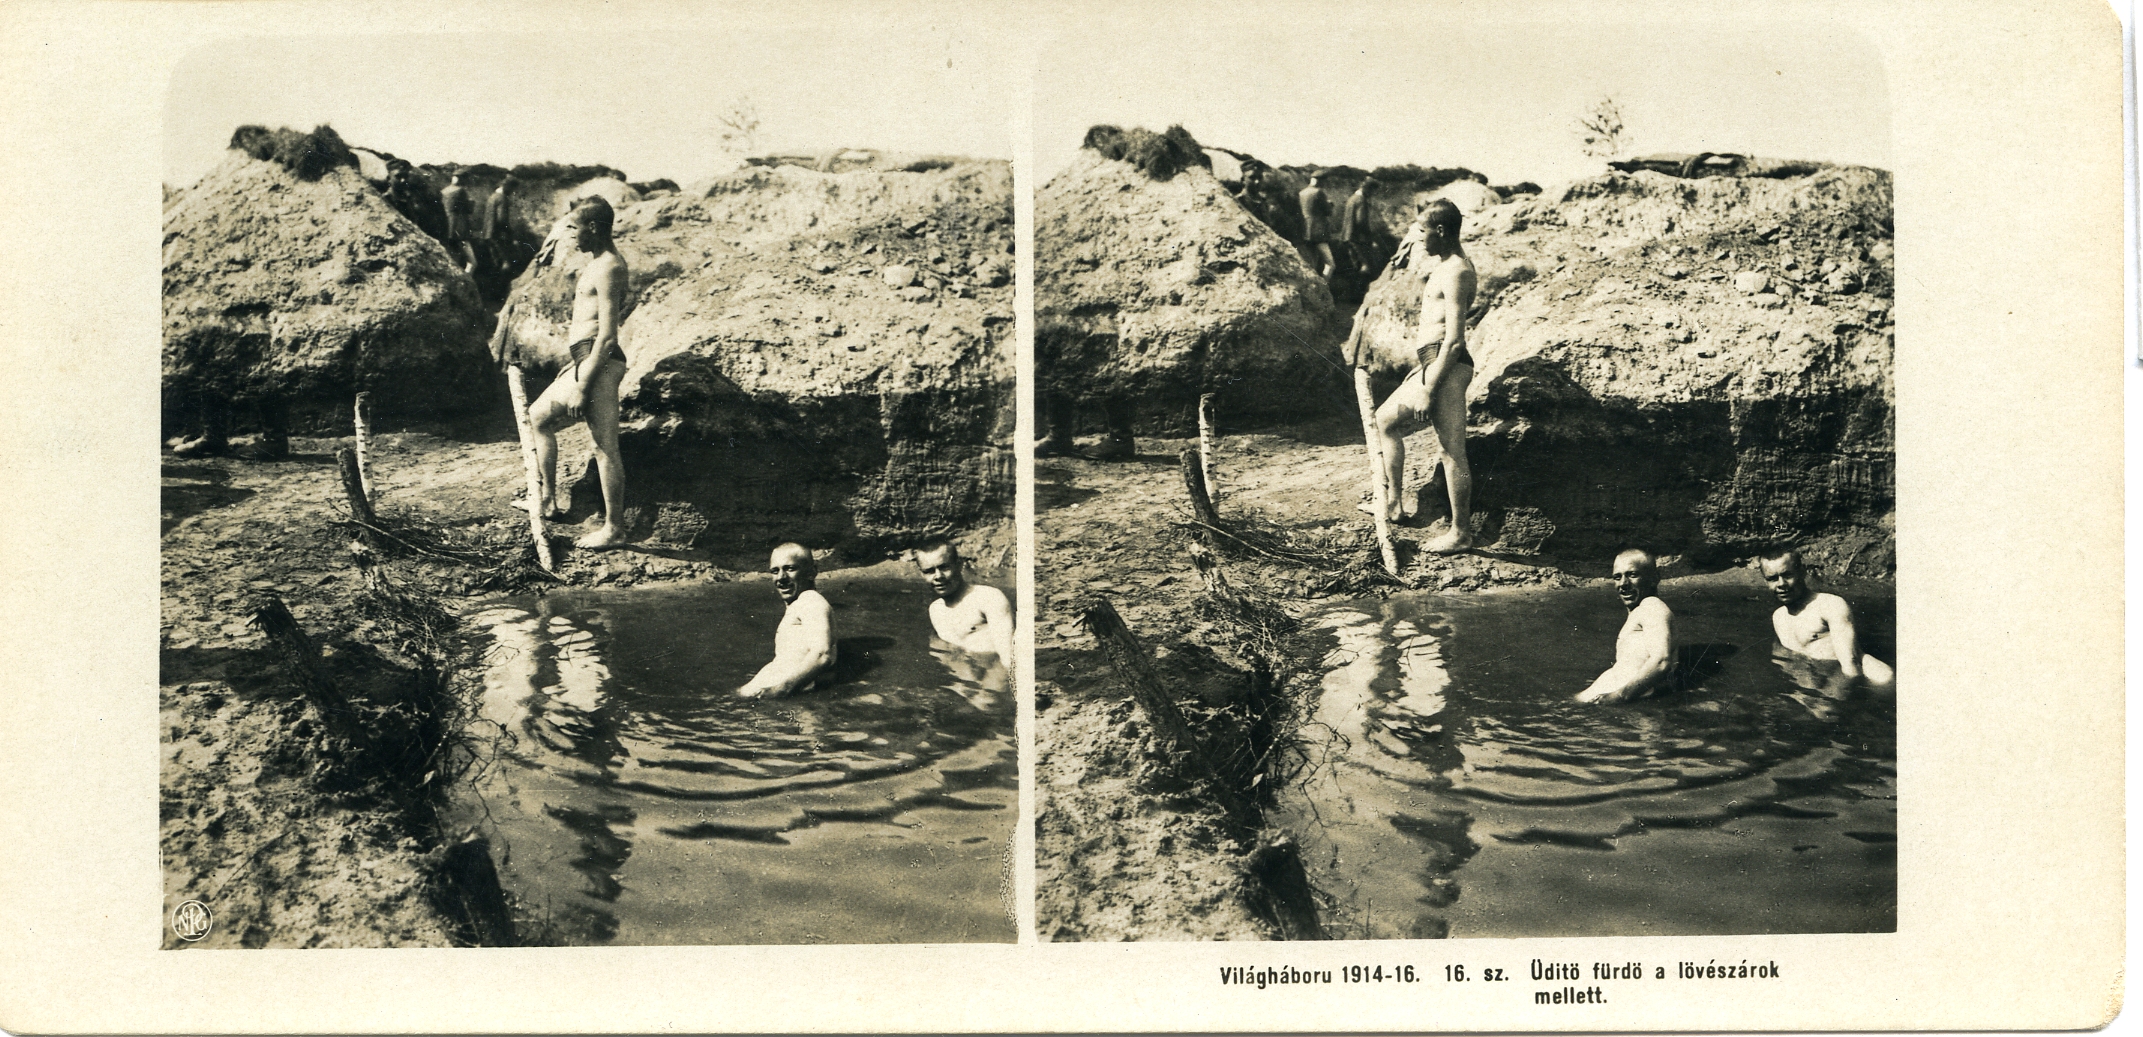 "Üditö fürdö a lövészárok mellett" - Refreshing bath next to the trenches.